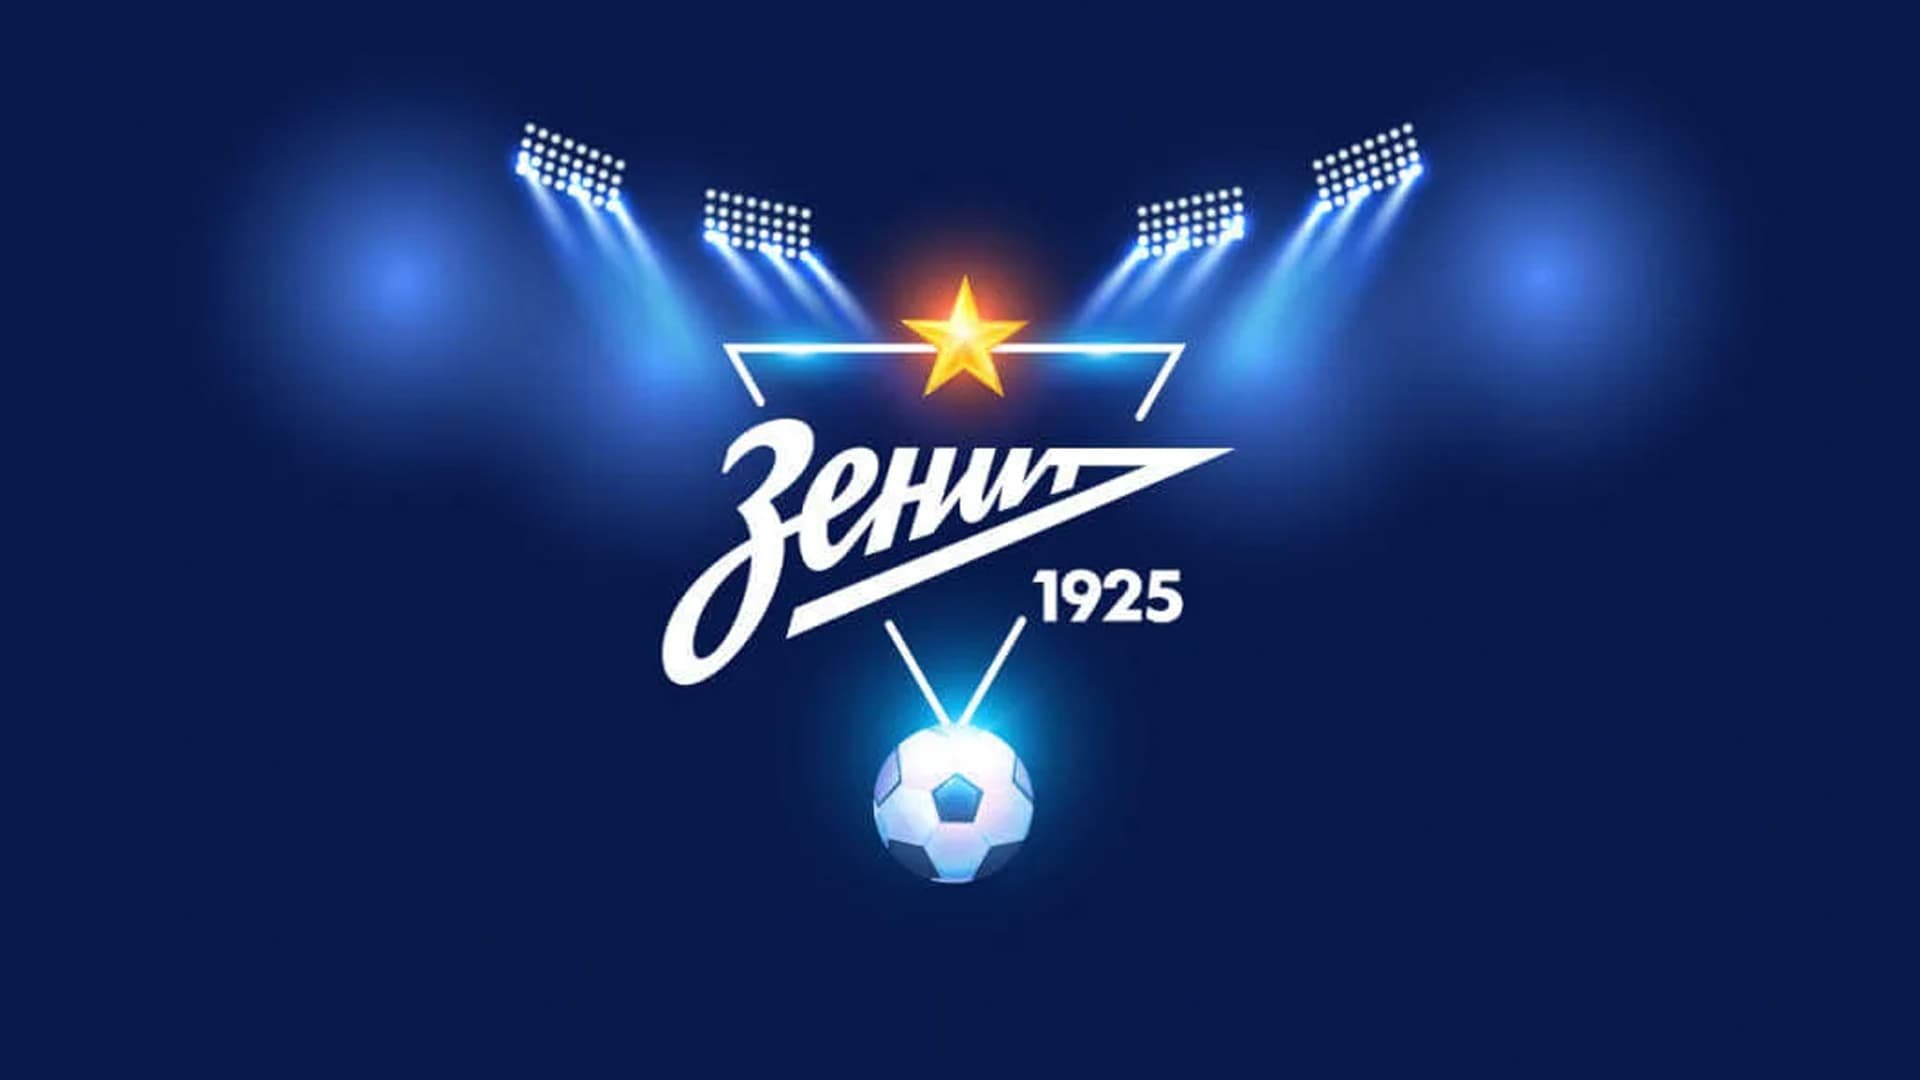 ФК Зенит лого 2020